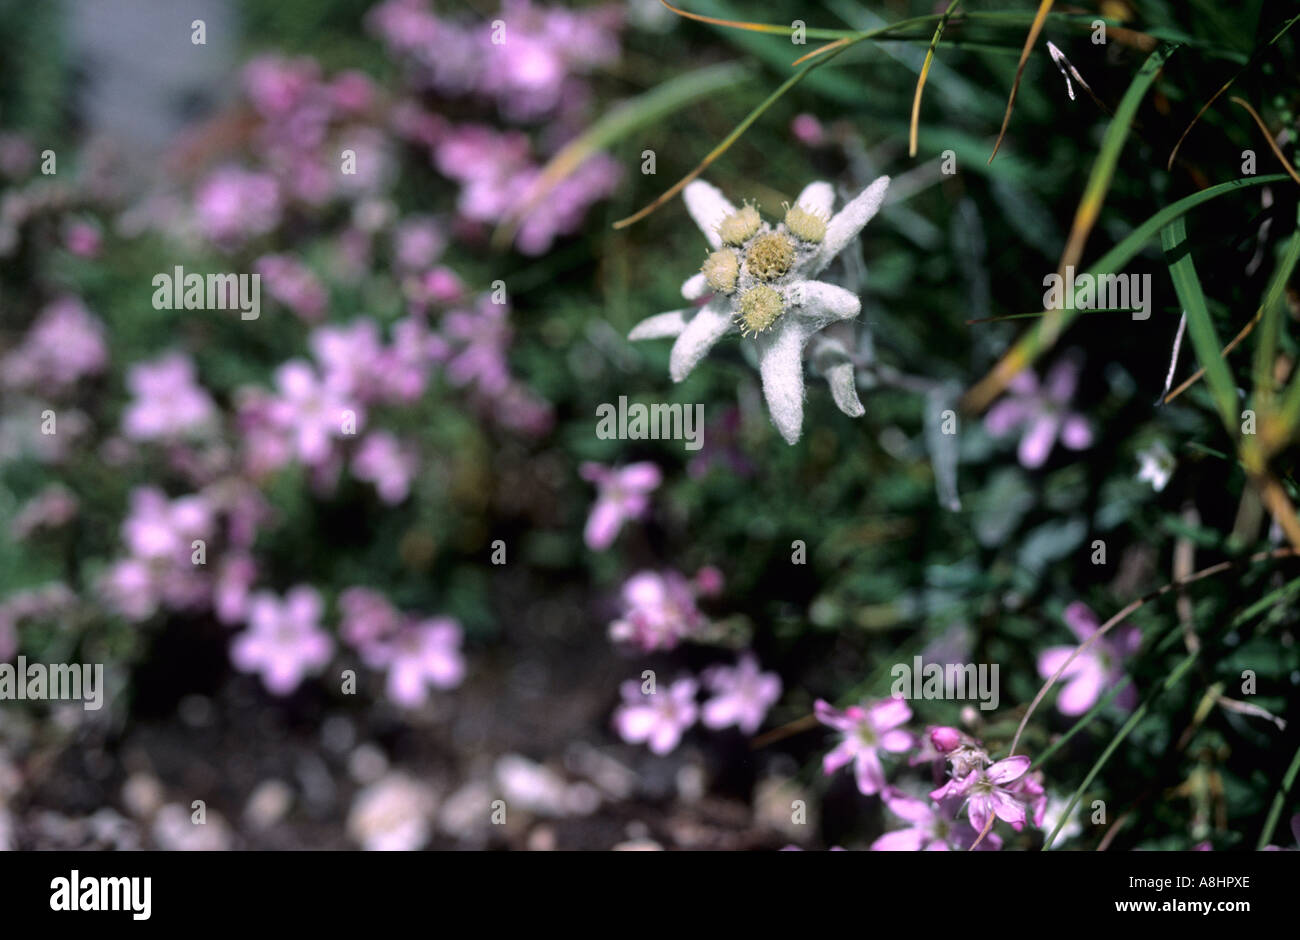 Edelweiss Leontopodium alpinum Dolomites Italy Stock Photo